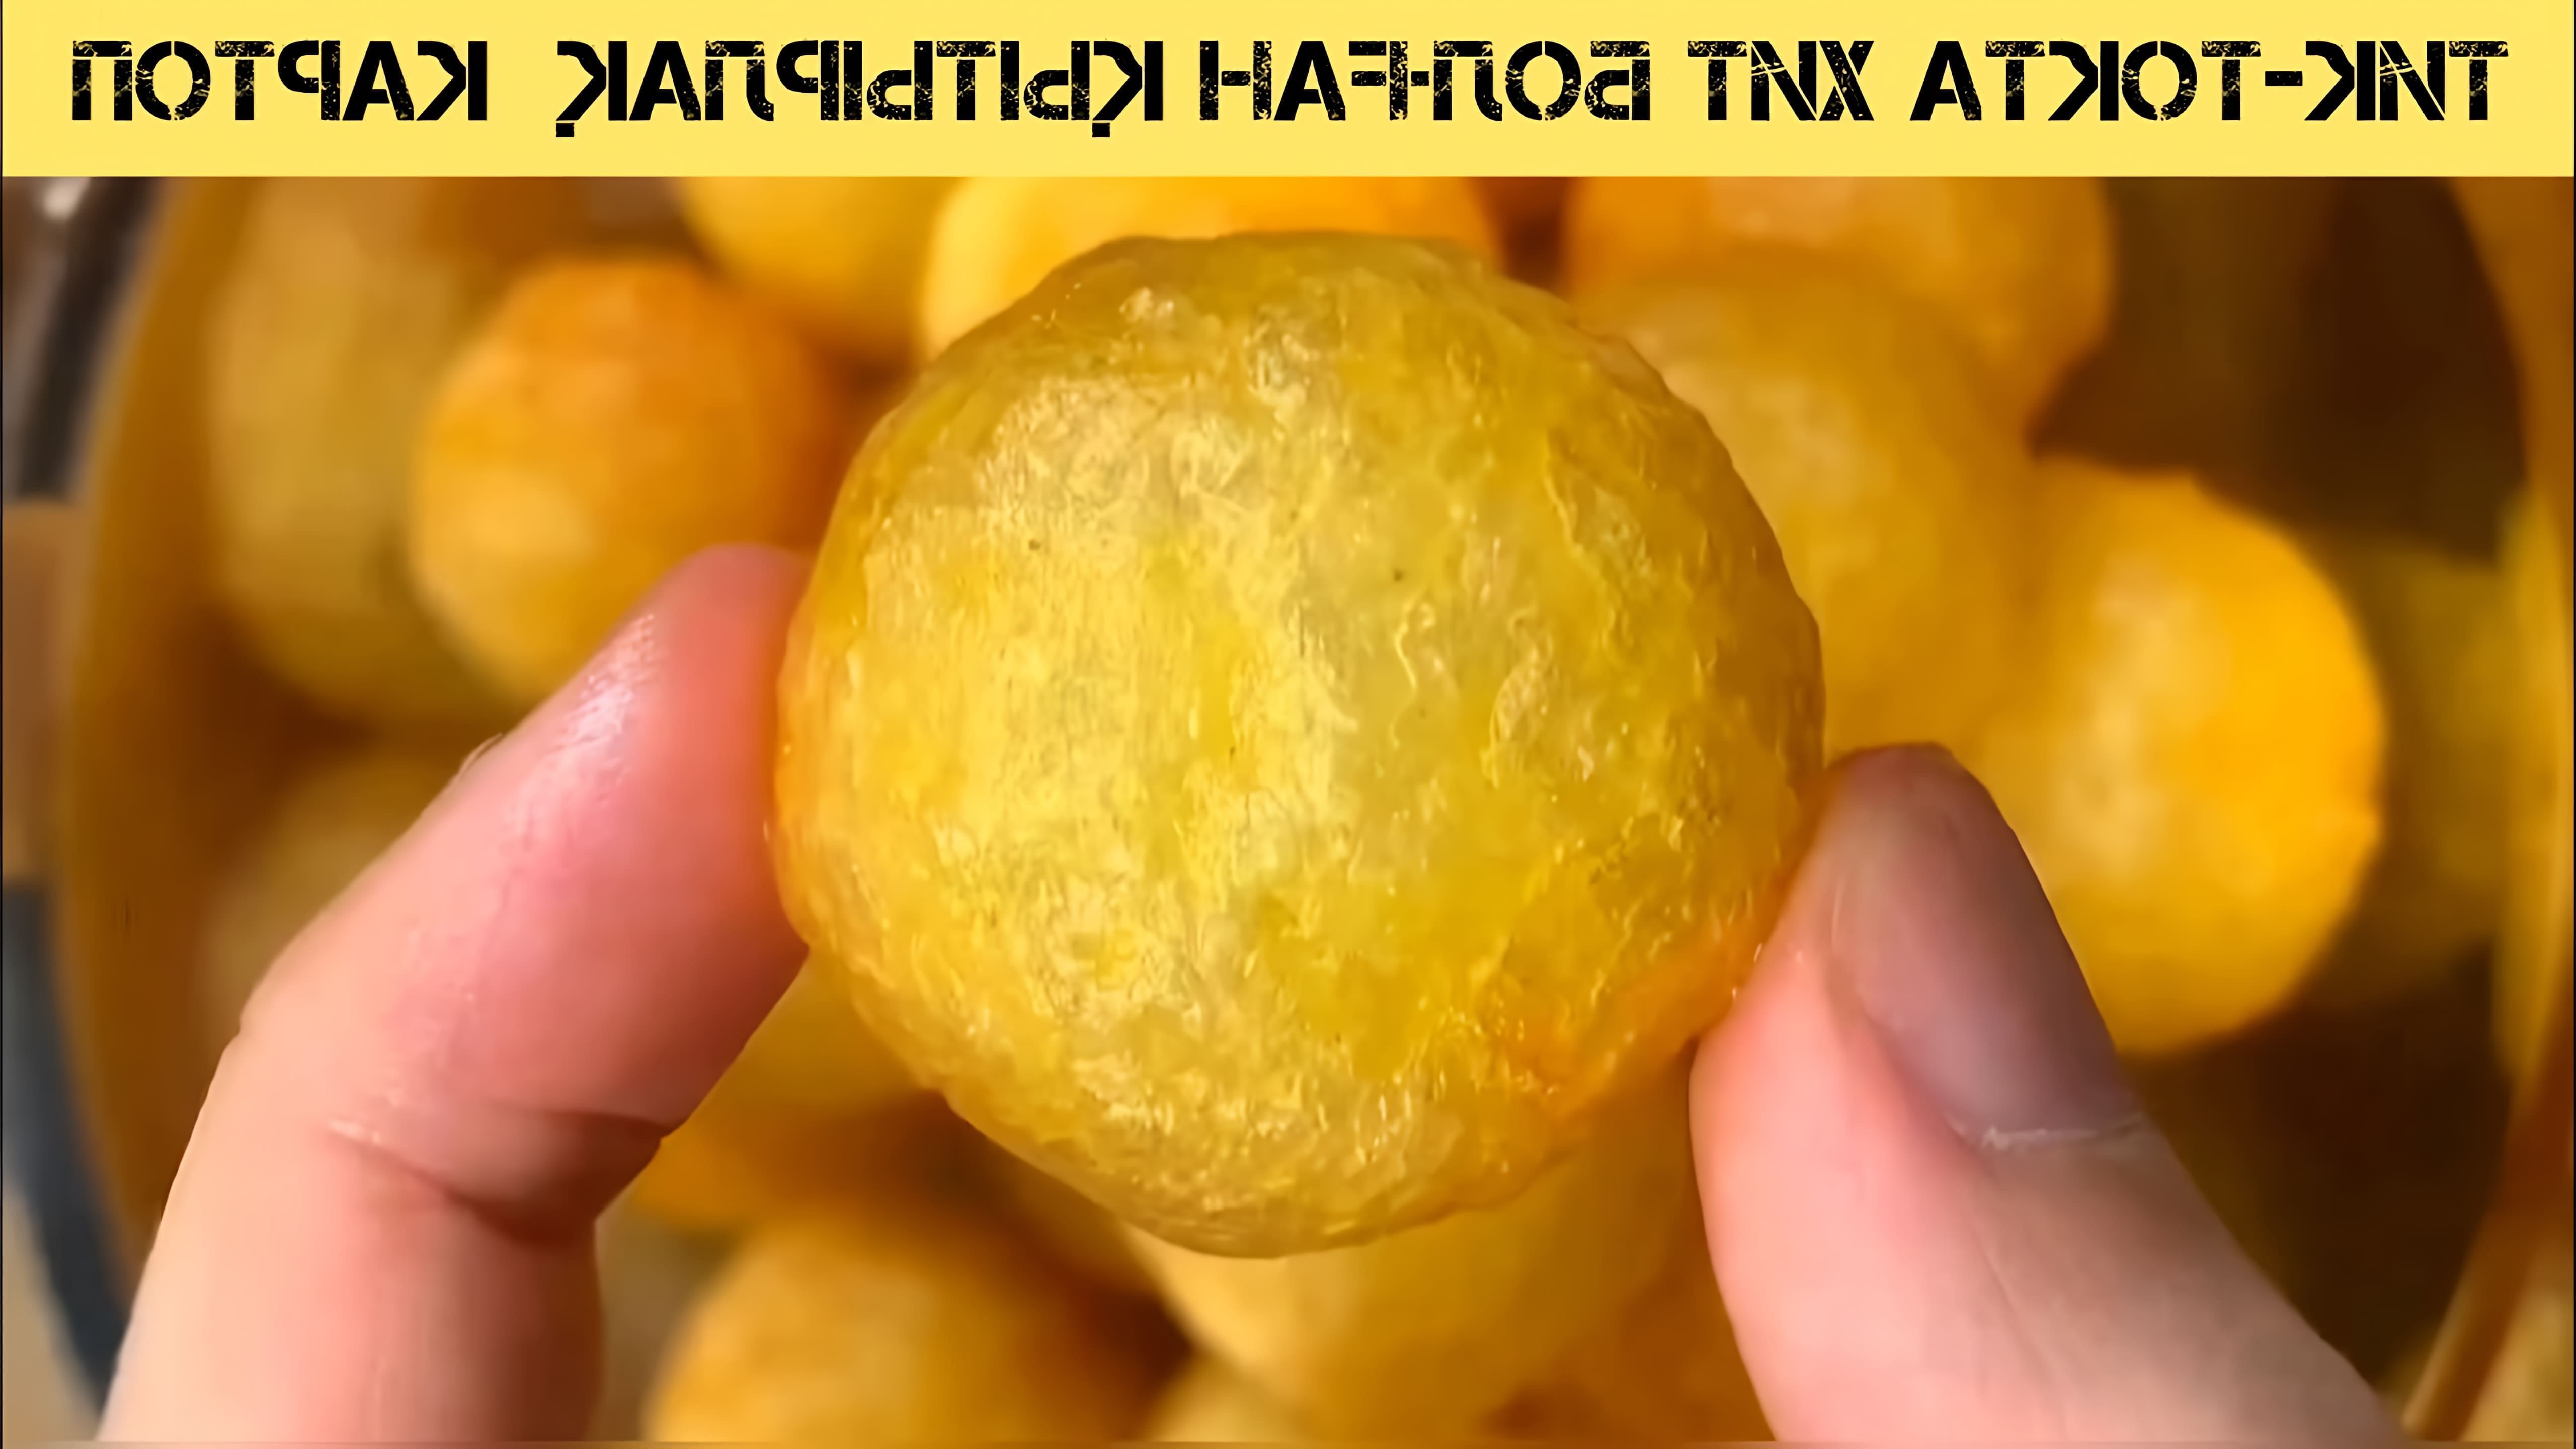 В этом видео показан процесс приготовления хрустящих картофельных шариков, которые стали популярными в ТикТоке